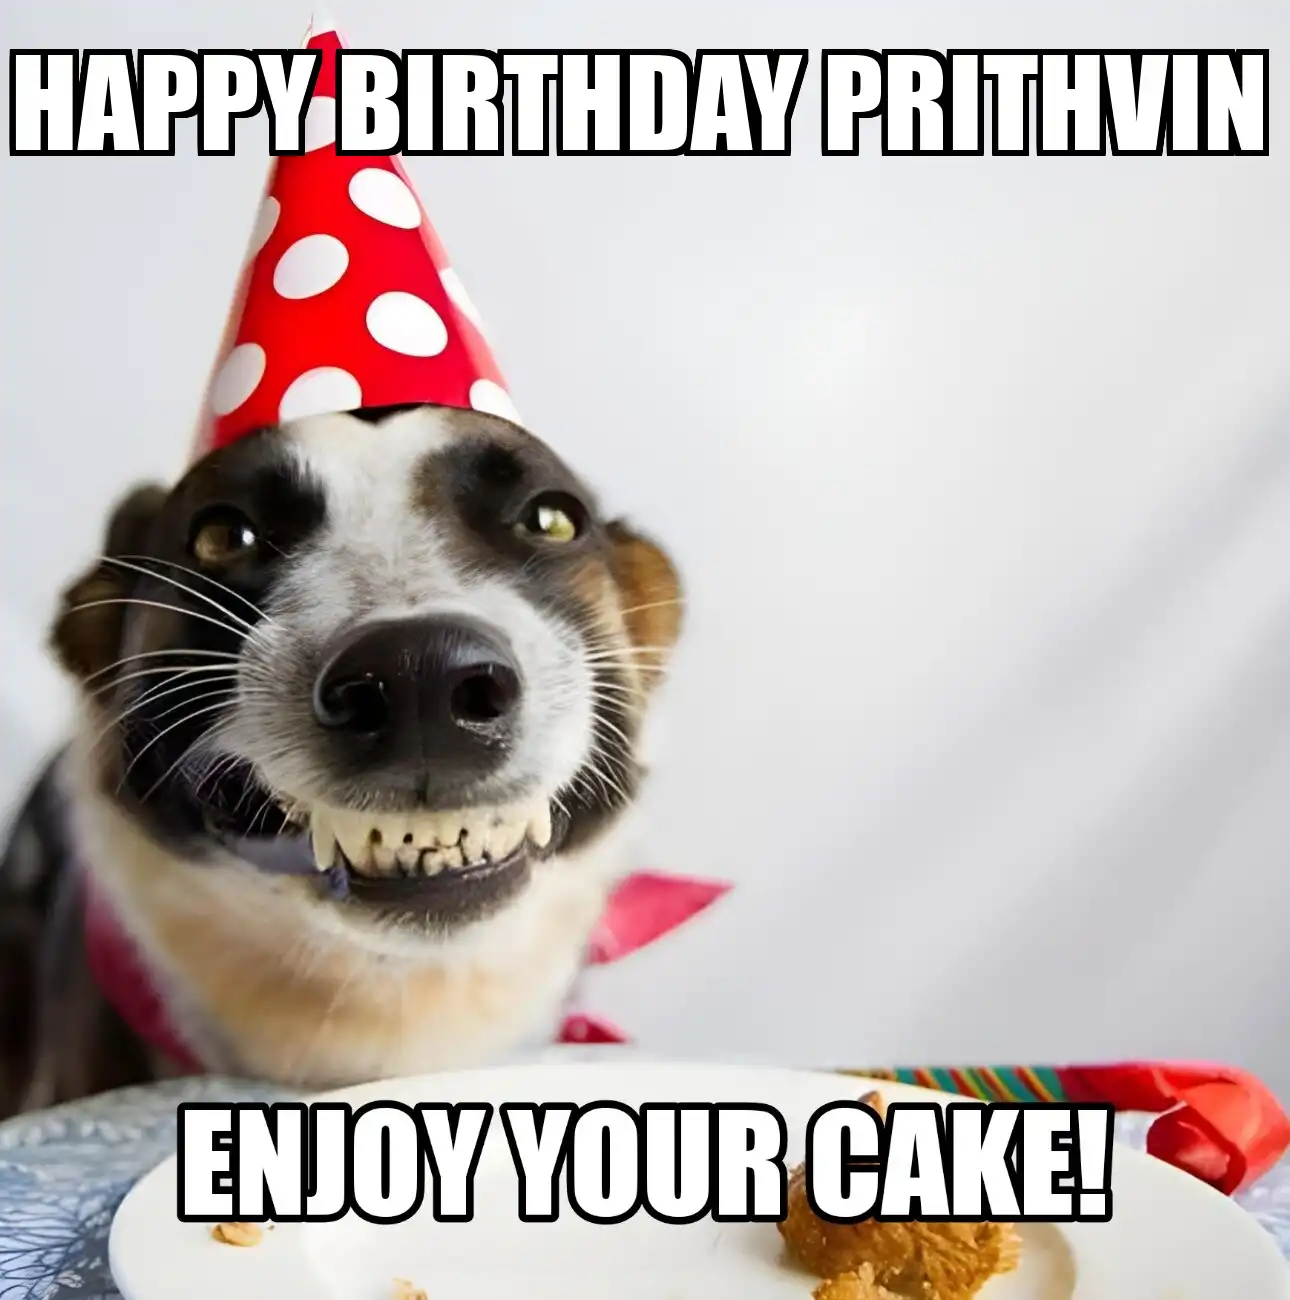 Happy Birthday Prithvin Enjoy Your Cake Dog Meme